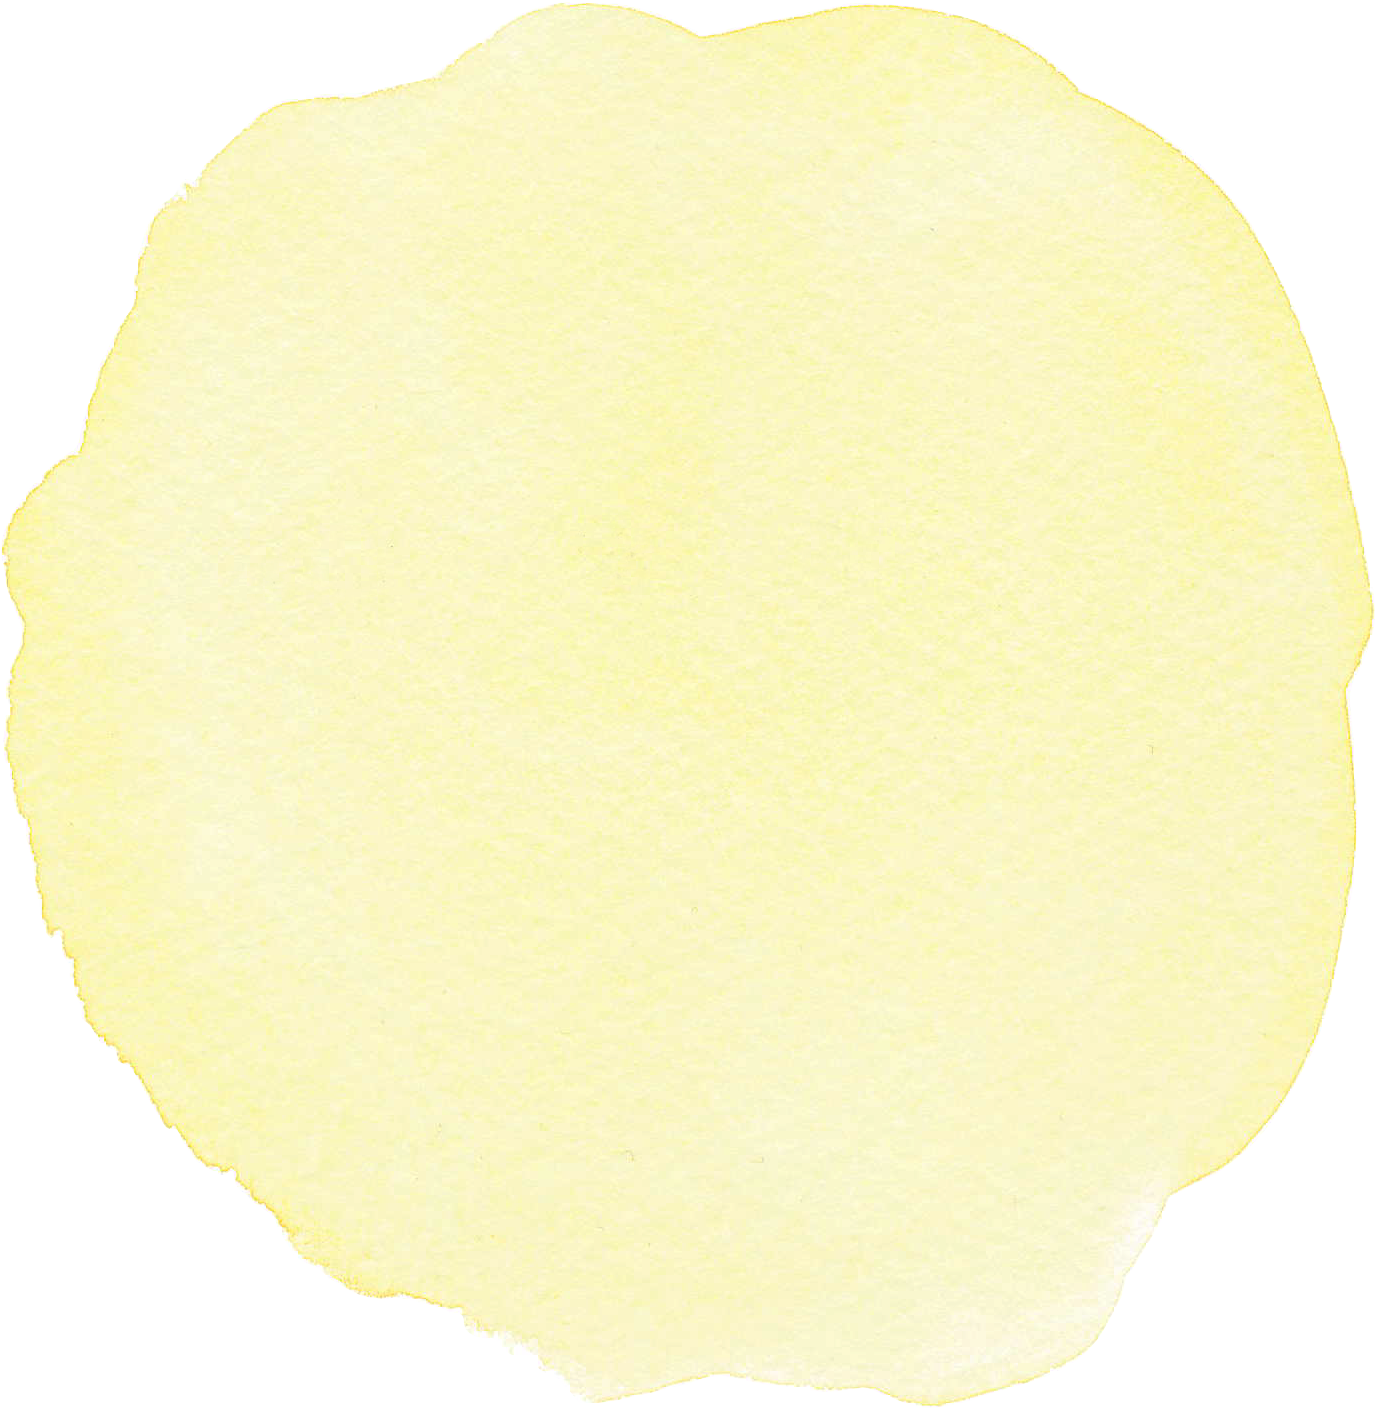 丸型の水彩テクスチャ 黄 ガーリー素材 ふんわり可愛い無料イラスト素材 ふんわり可愛い無料イラスト素材